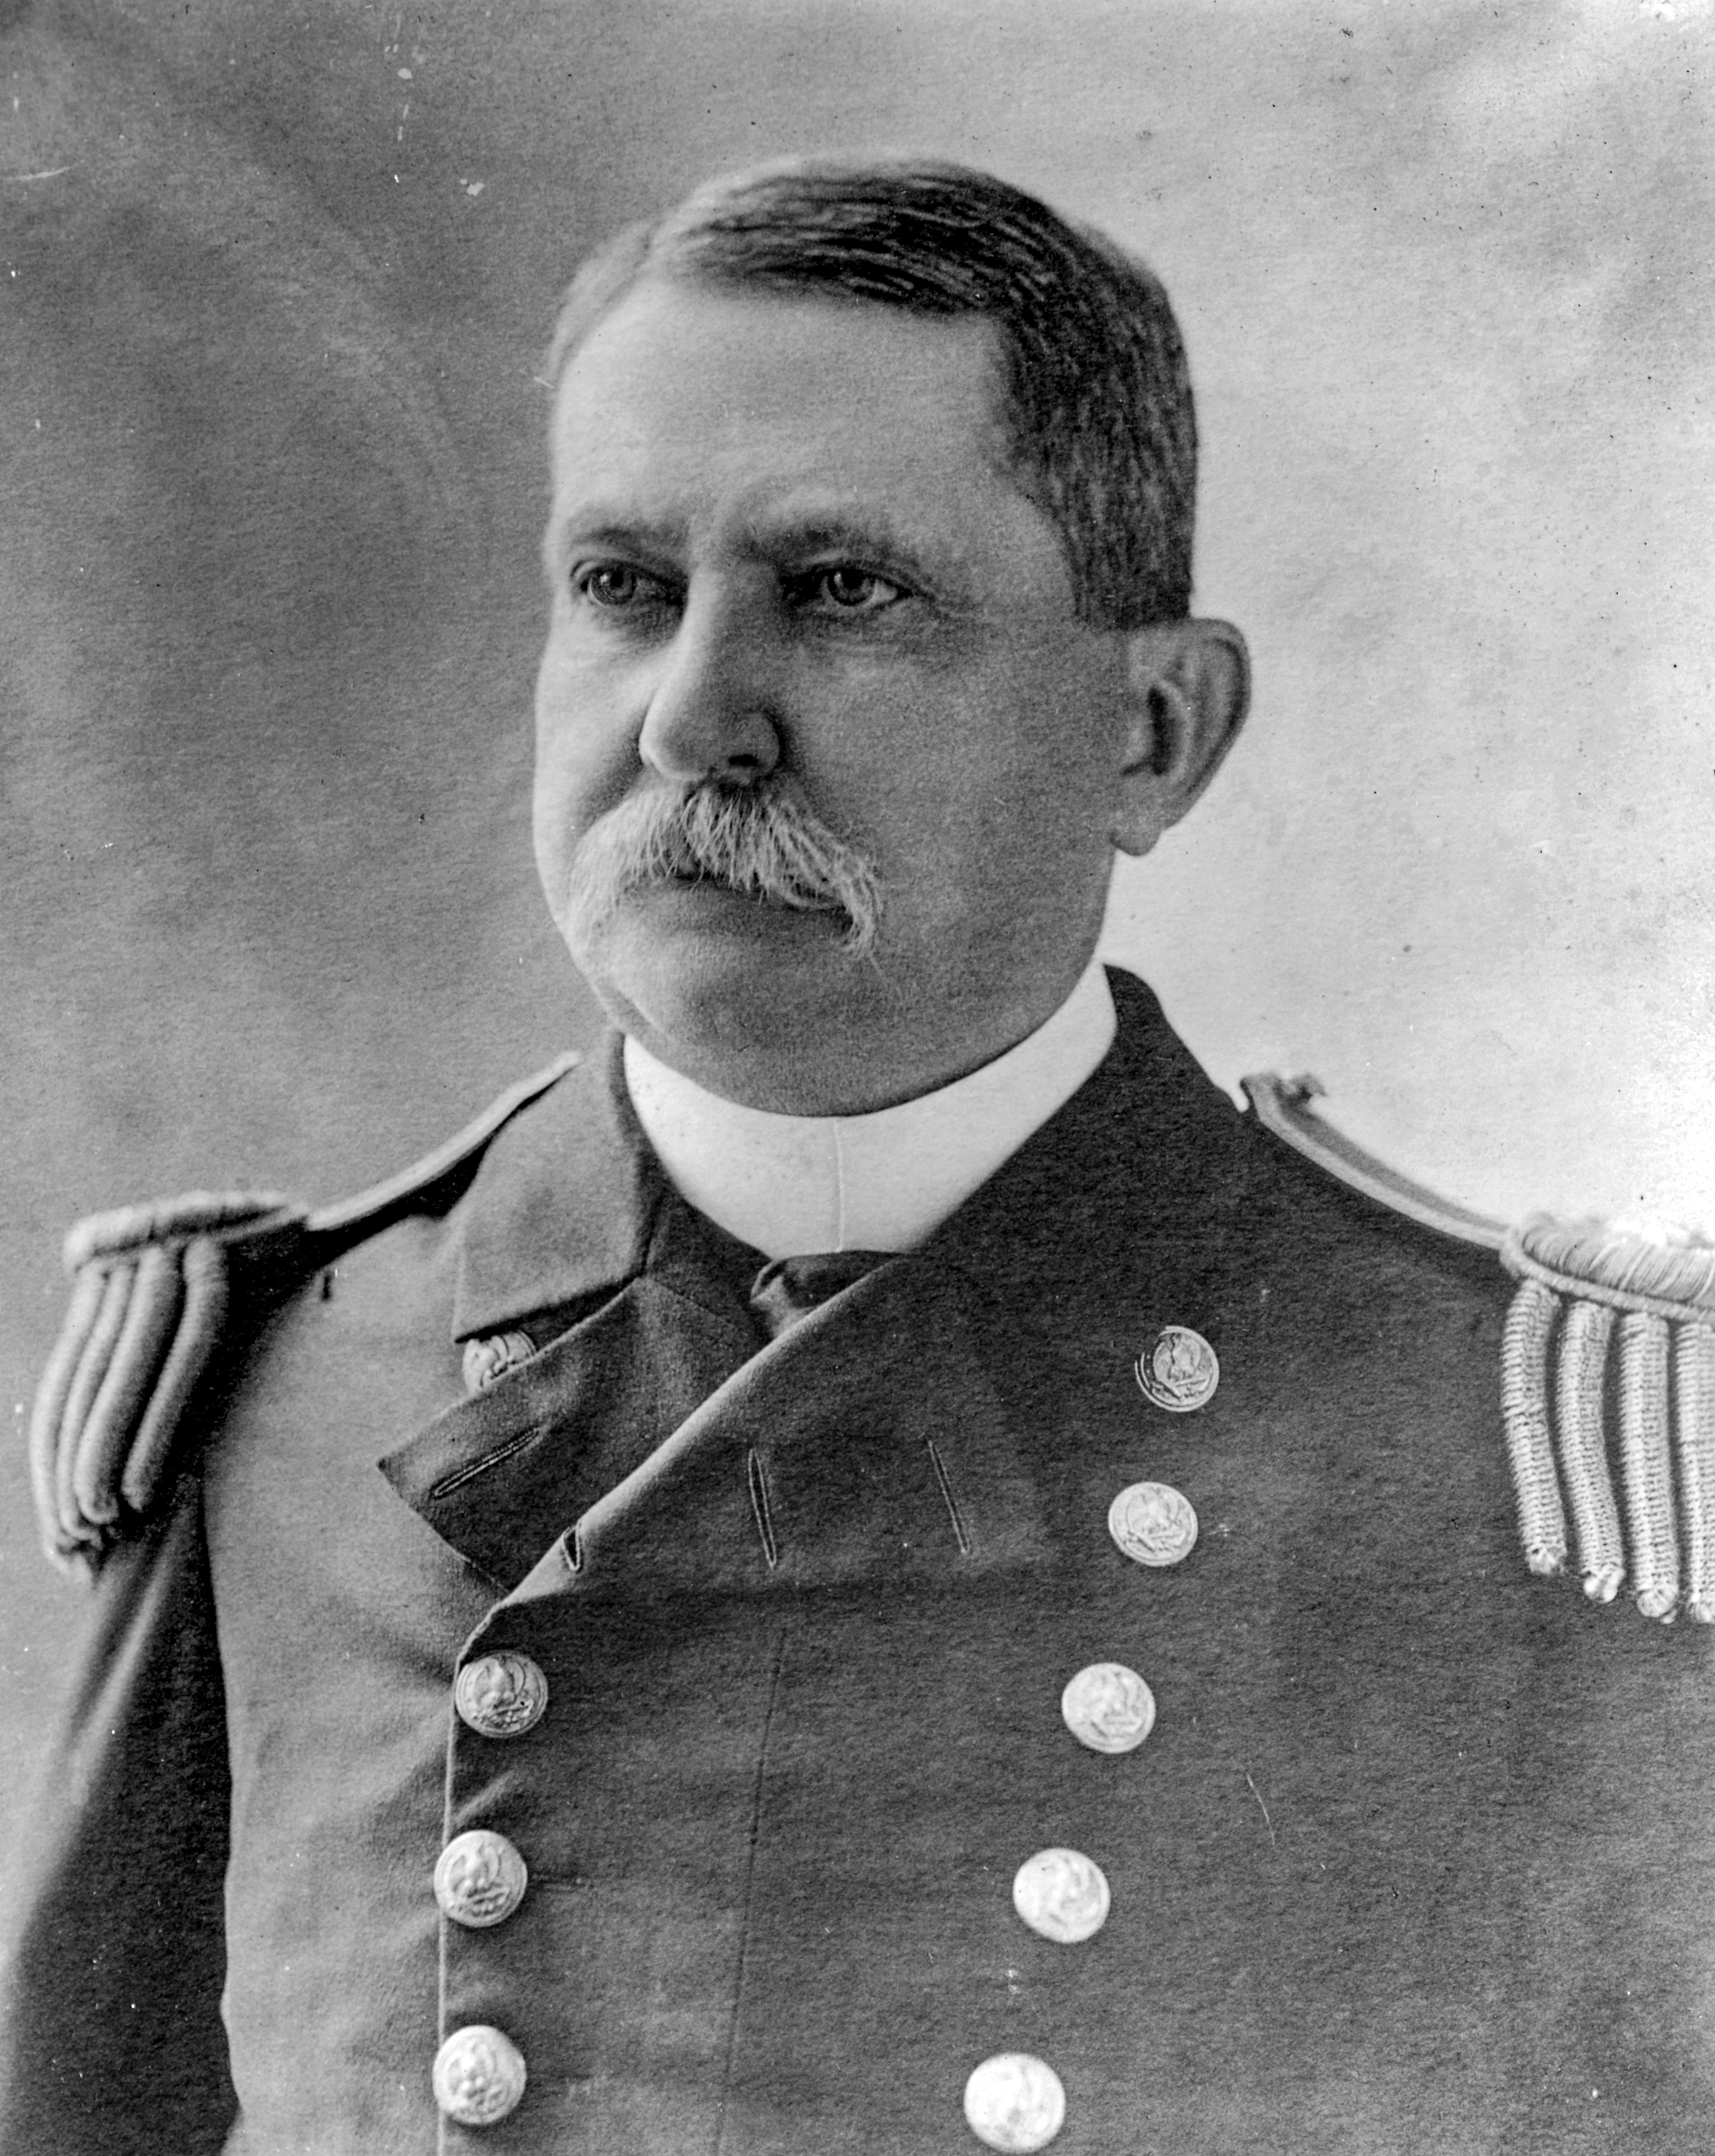 Portrait of Captain Norman Von Heidreich Farquhar, USN